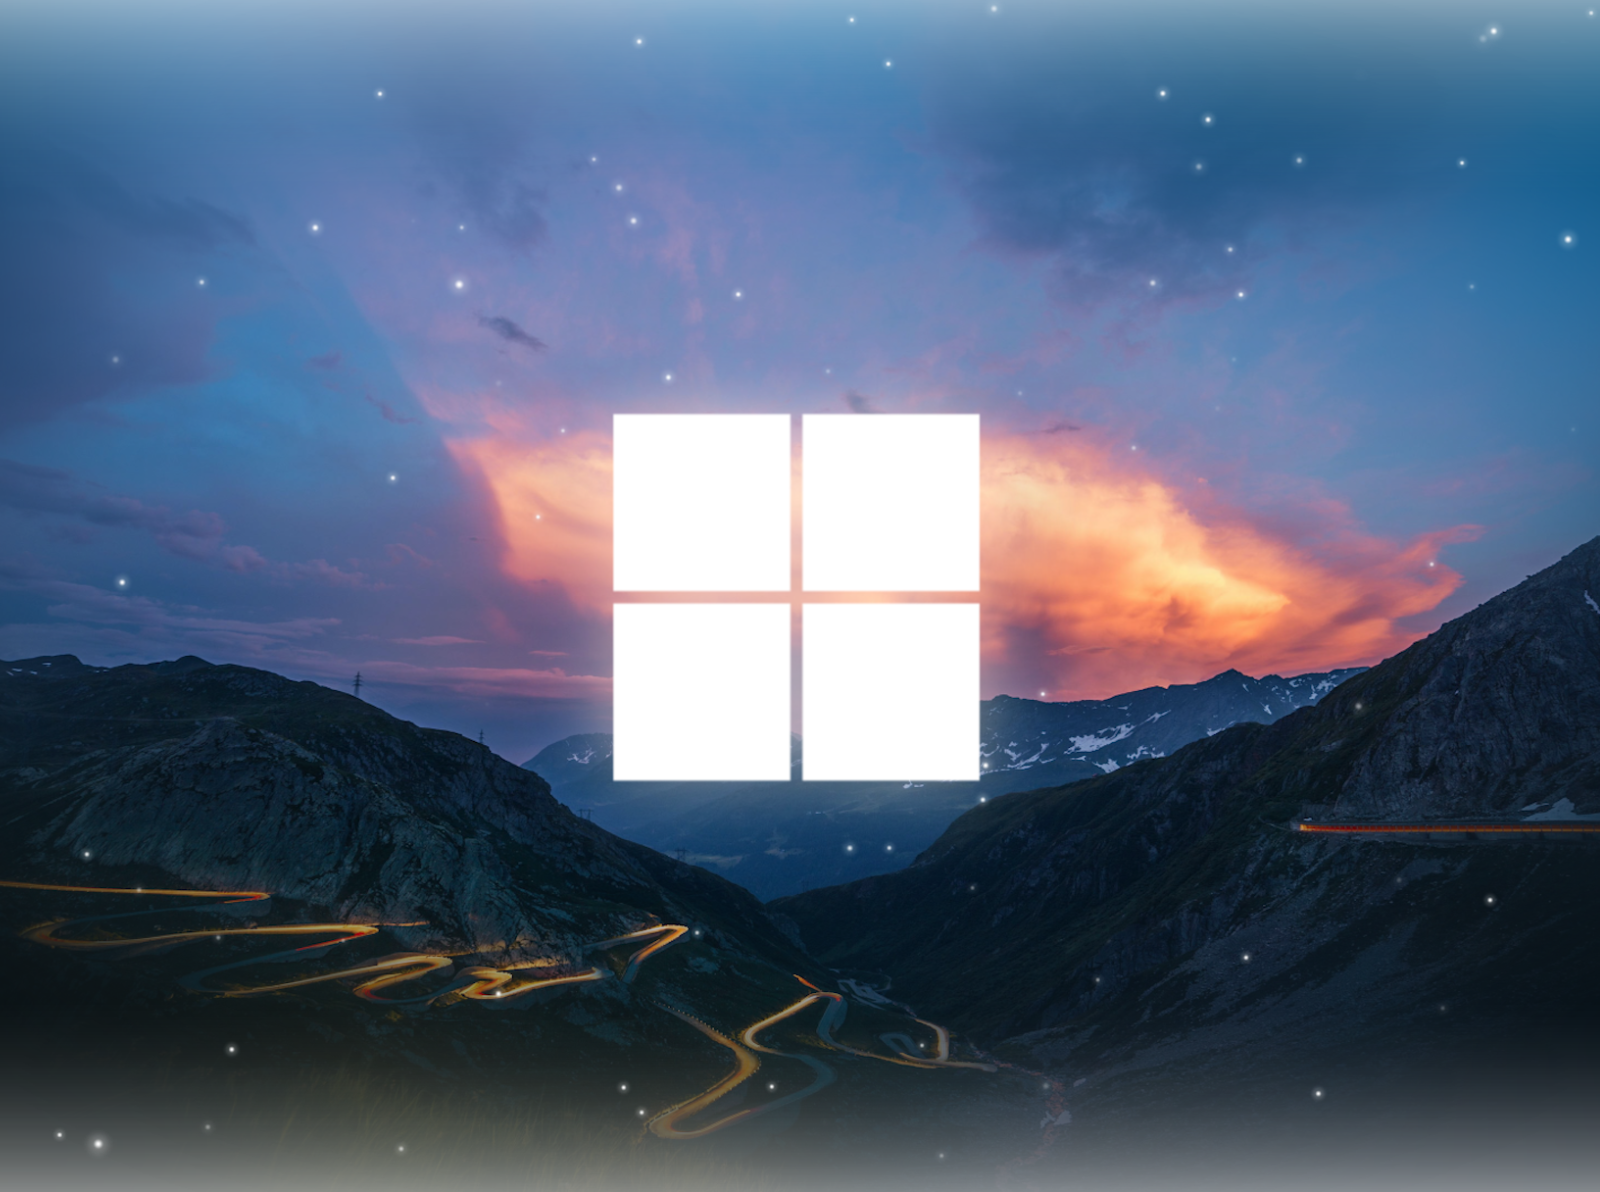 Windows 11 Wallpaper 4K by Drixter on Dribbble